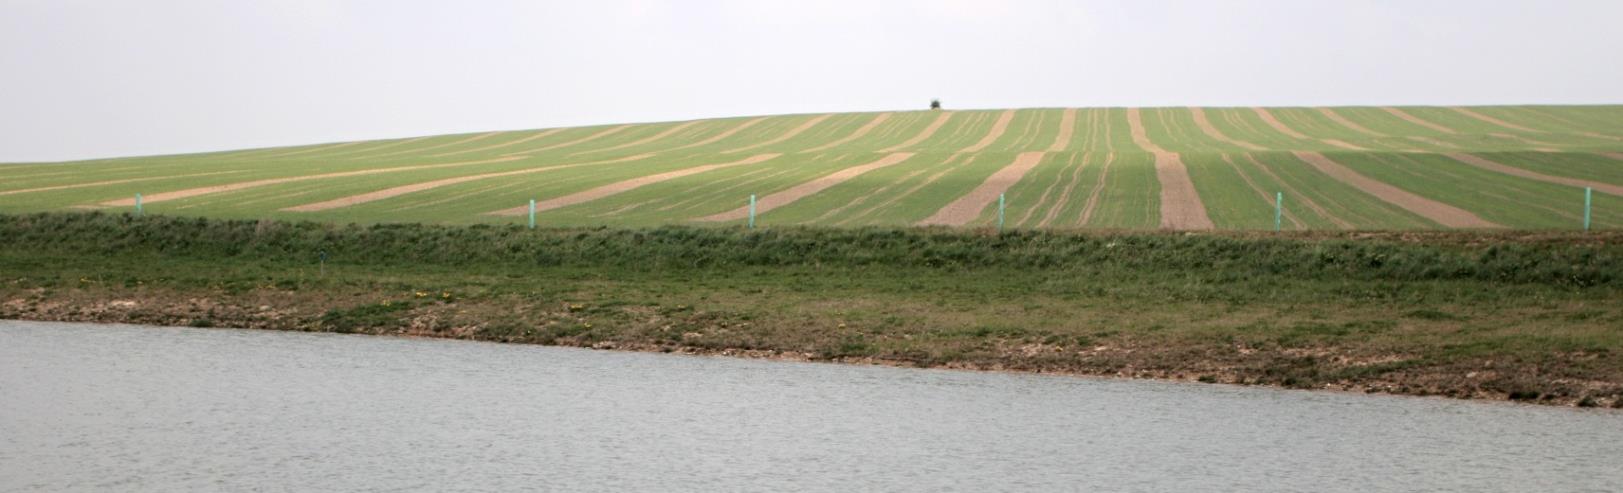 Úpravy okolí nádrže V okolí prostoru zátopy se doporučuje vytvořit travní pás o minimální šířce 15 m; pás především zabraňuje přímému přísunu sedimentu z okolních pozemků do nádrže Pro vytvoření